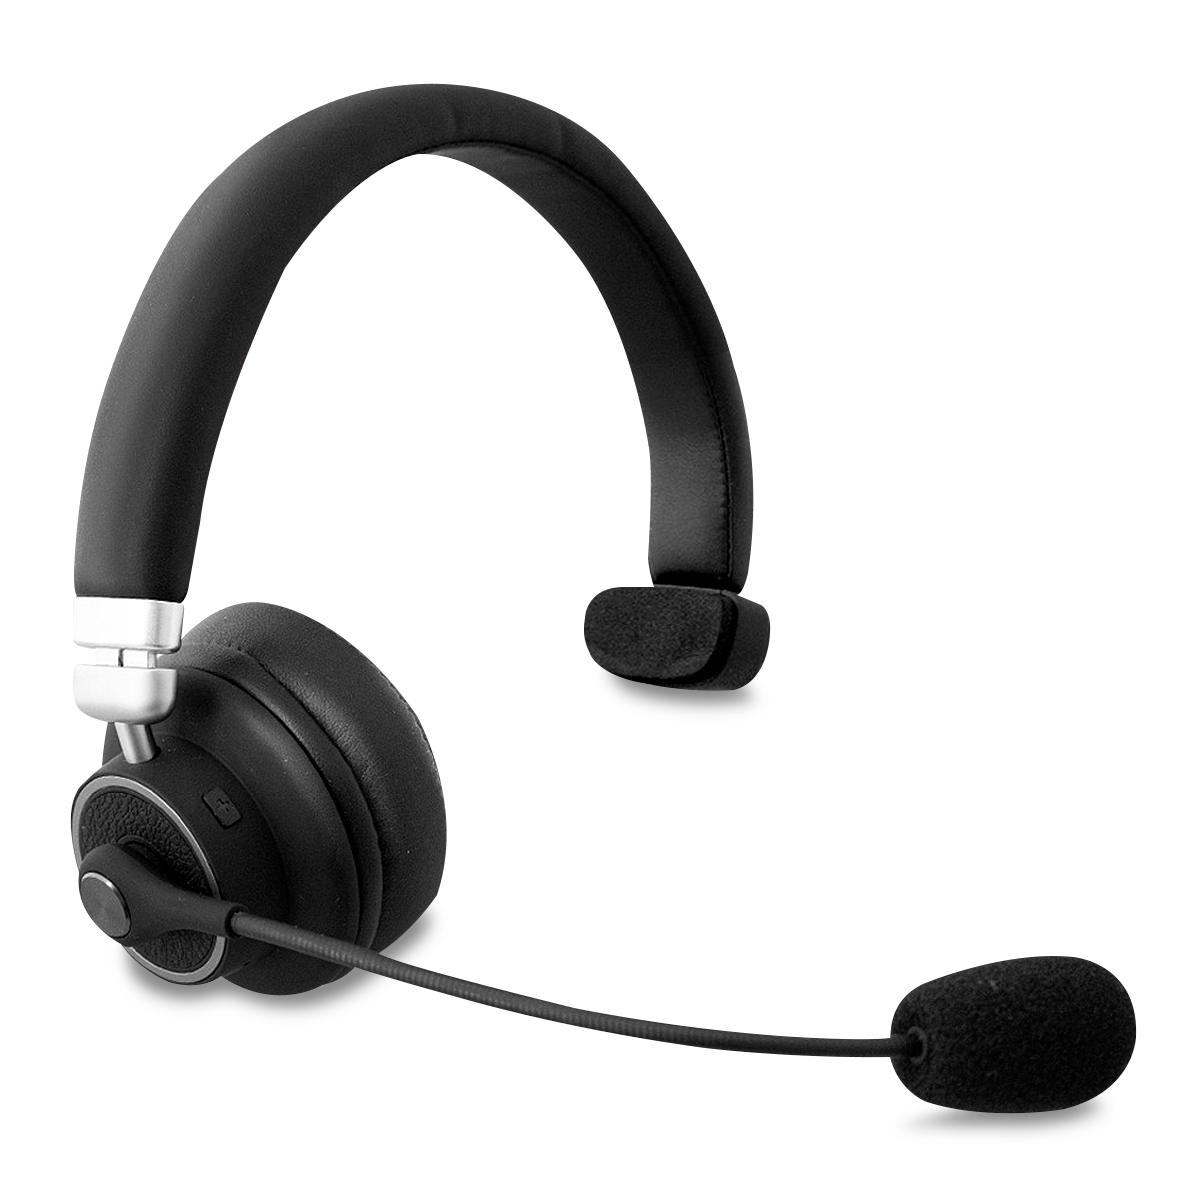 Micrófono Inalámbrico Diadema Headset1 Negro con Micrófono